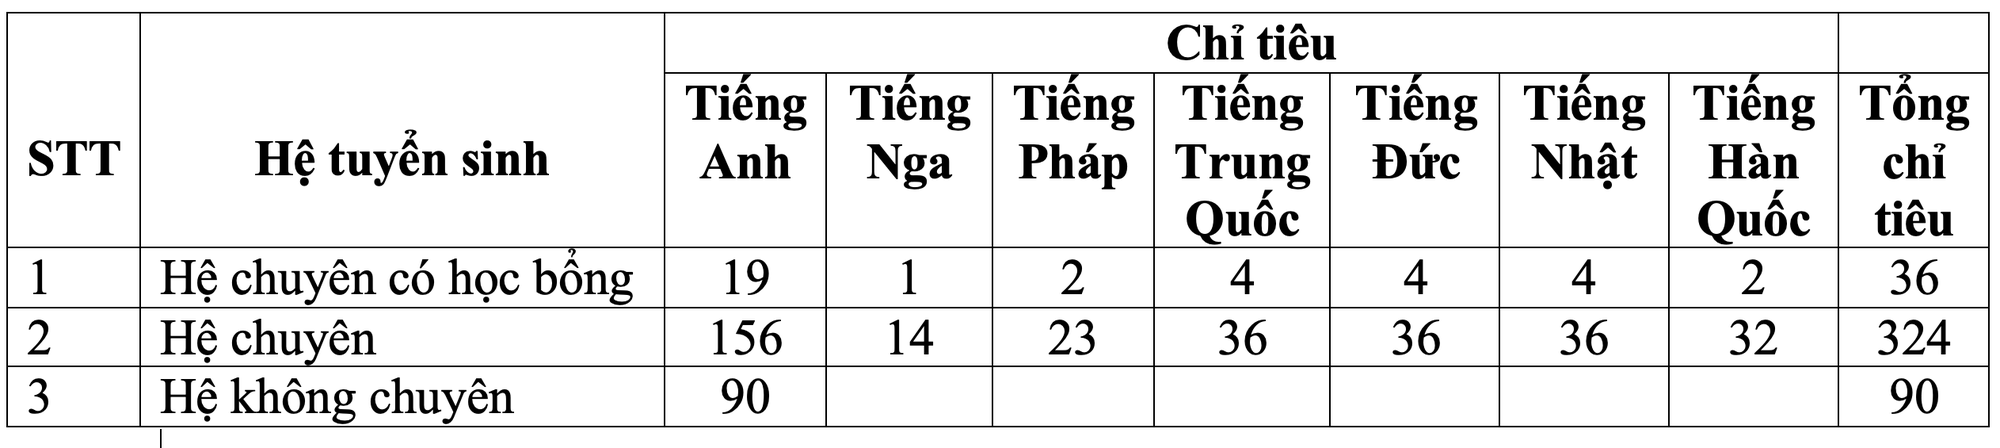 Chi tiết chỉ tiêu và thời gian tuyển sinh vào lớp 10 các trường THPT điểm tại Hà Nội - Ảnh 1.